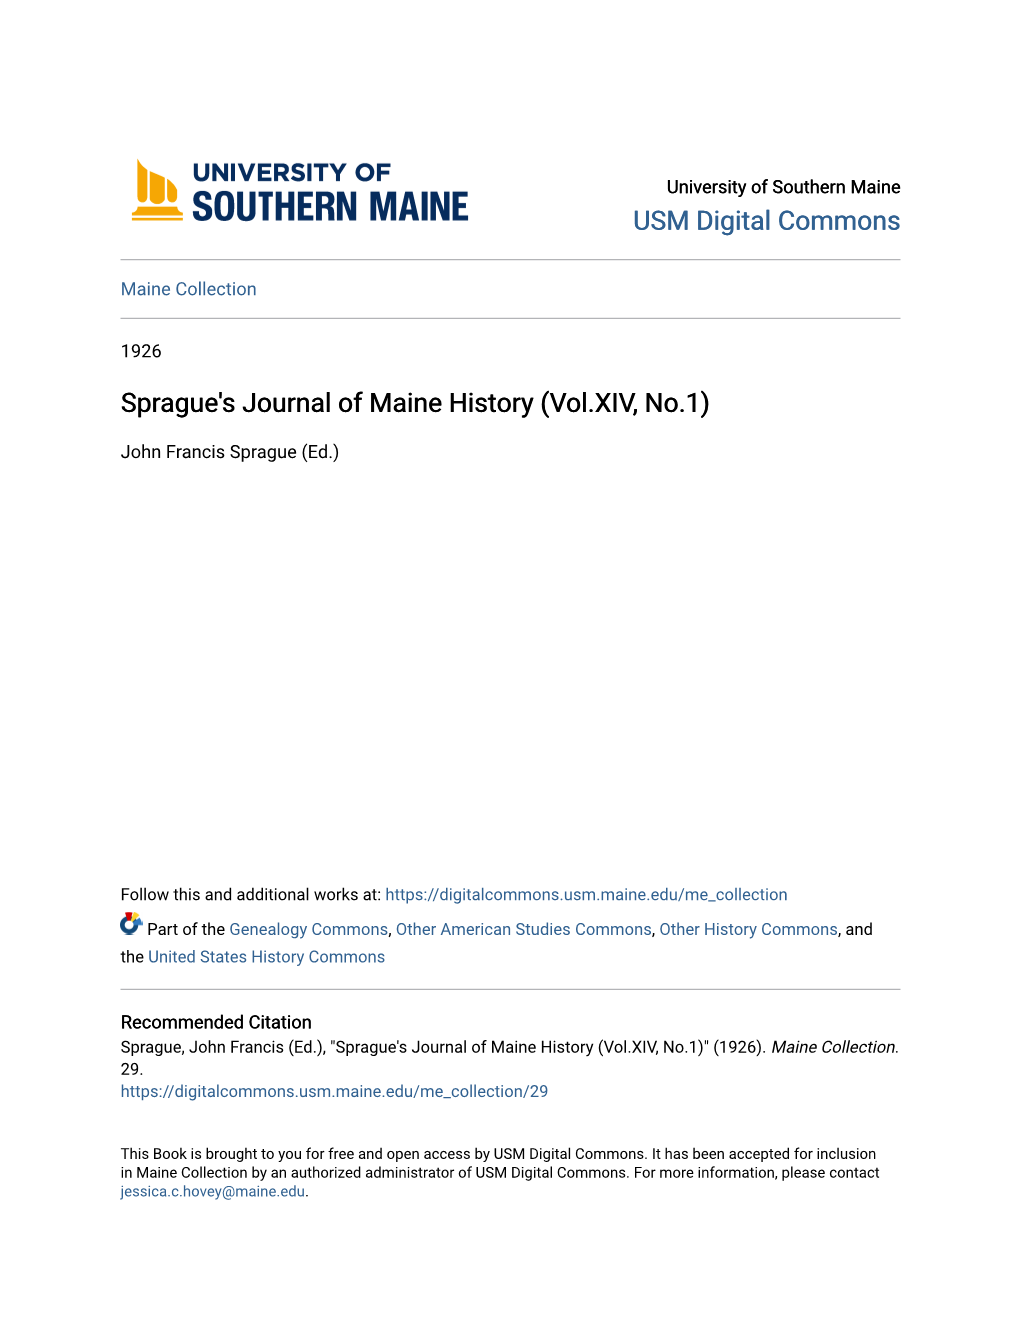 Sprague's Journal of Maine History (Vol.XIV, No.1)